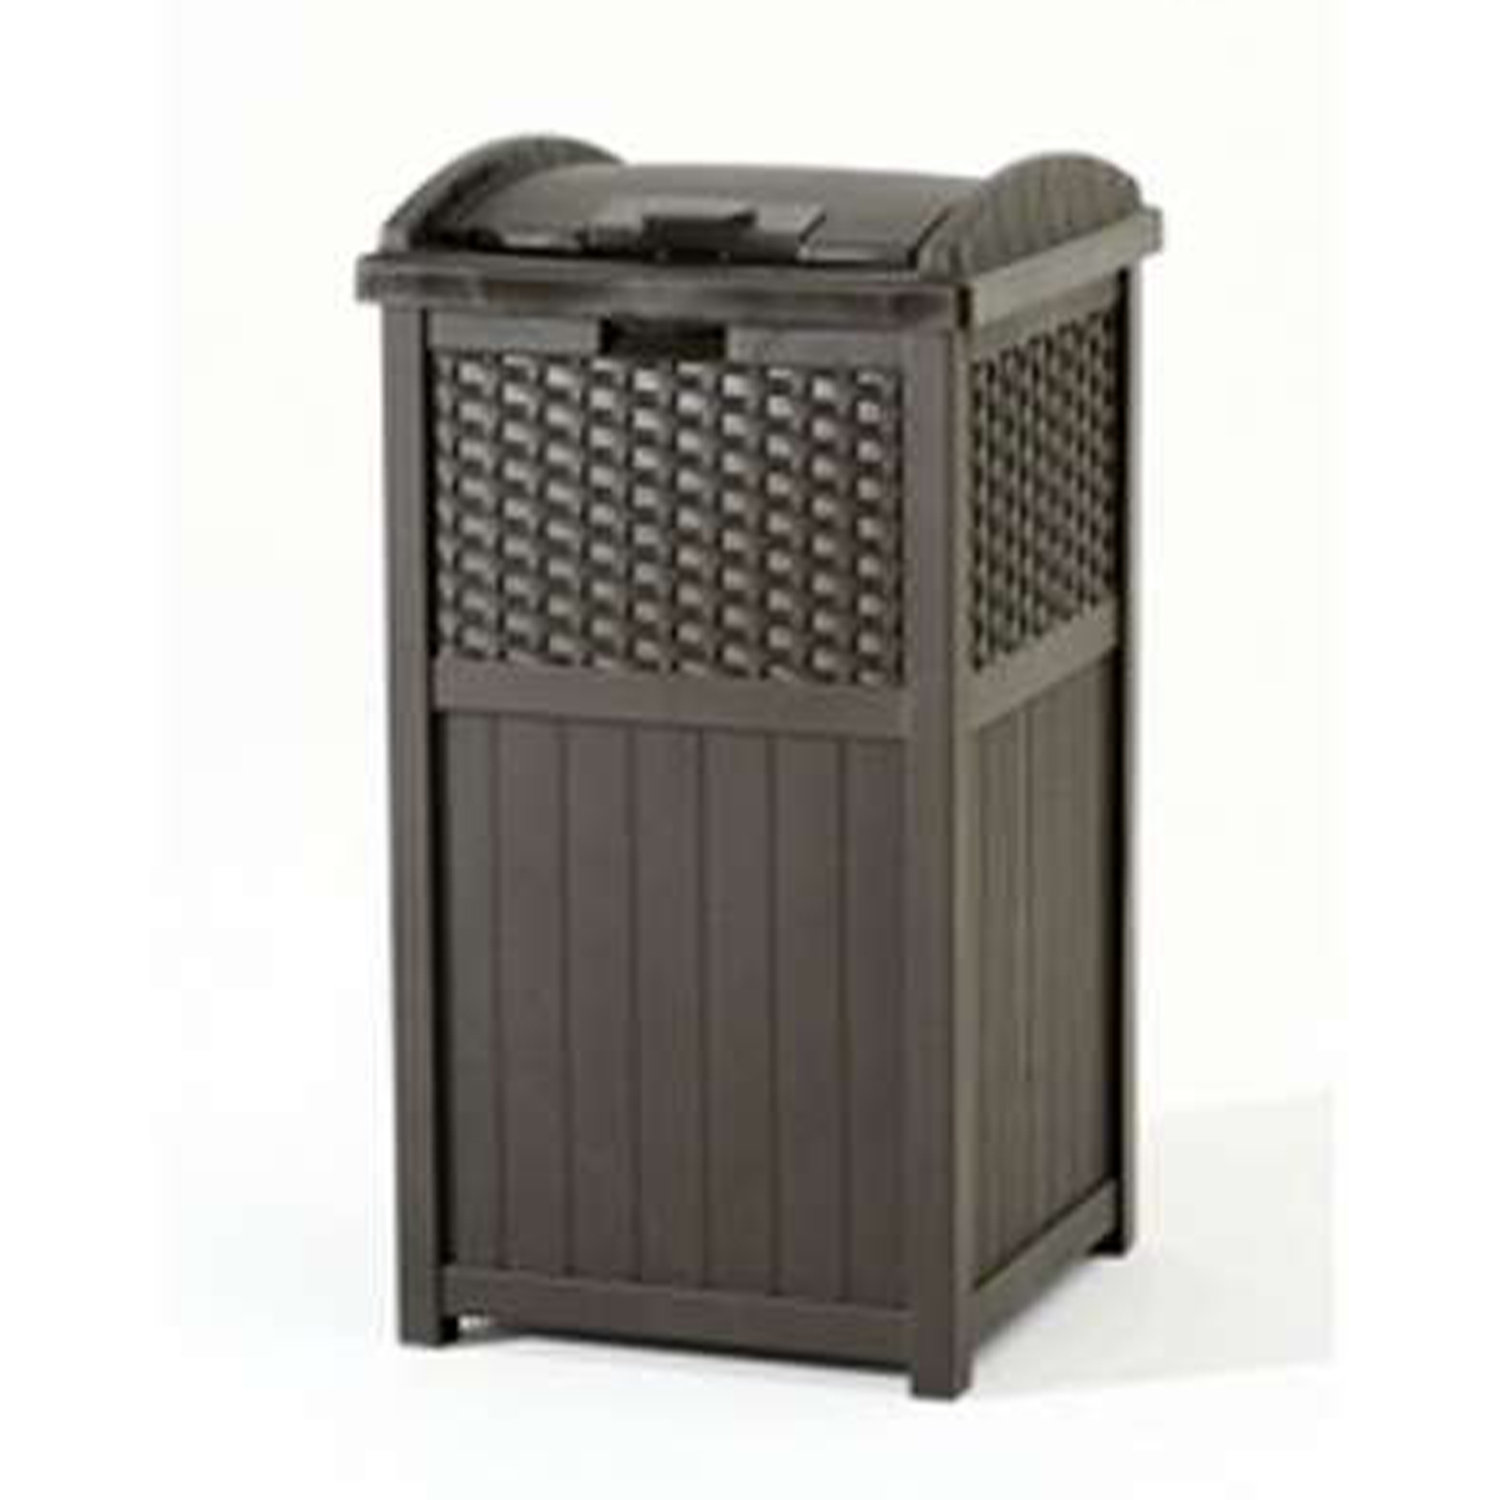  Suncast 30-Gallon Durable Hideaway Trash Waste Bin